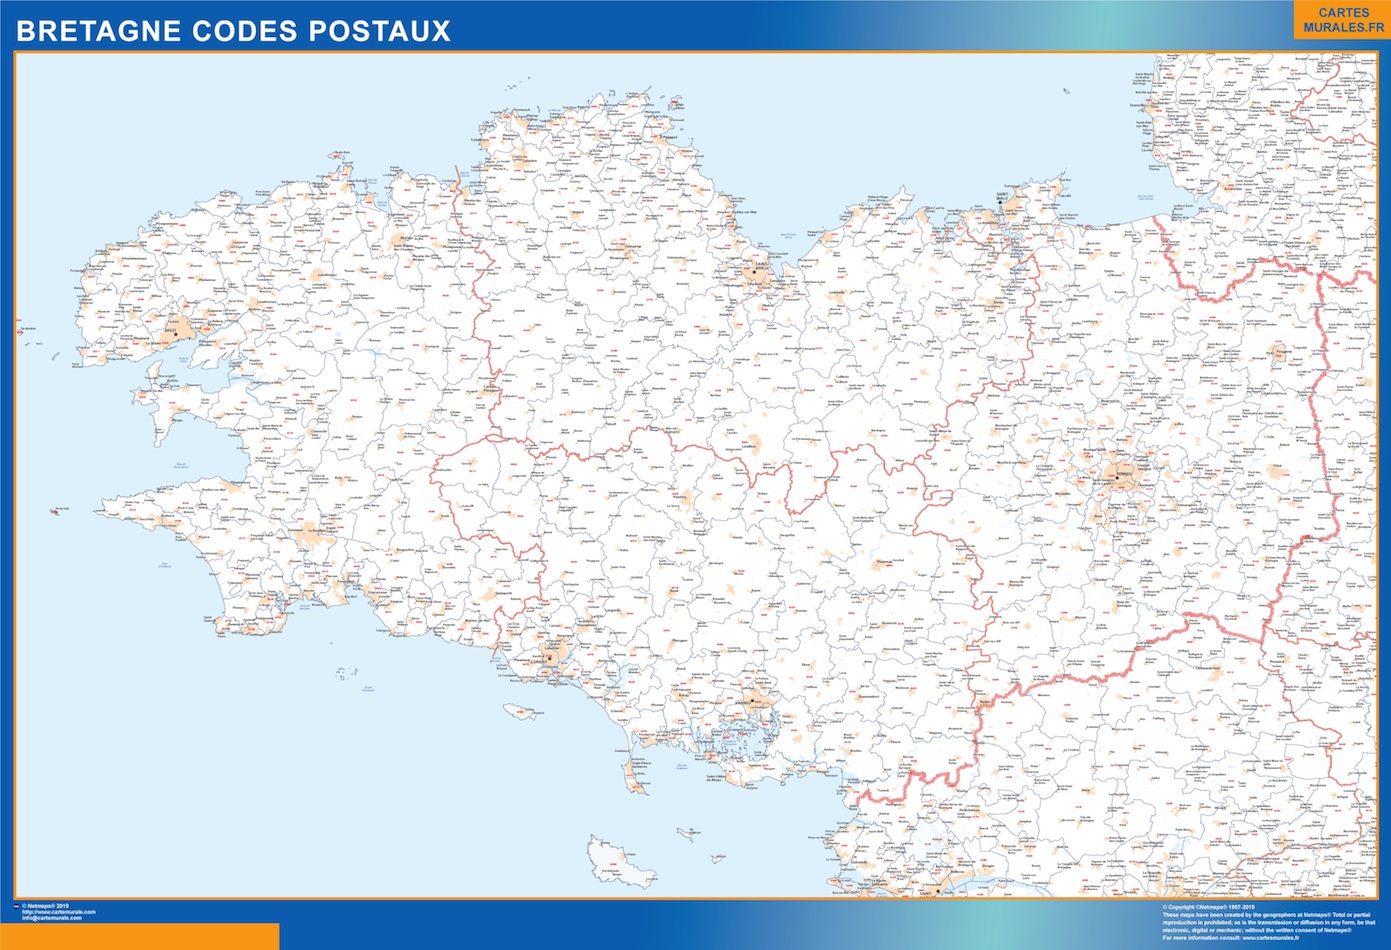 Region Bretagne codes postaux